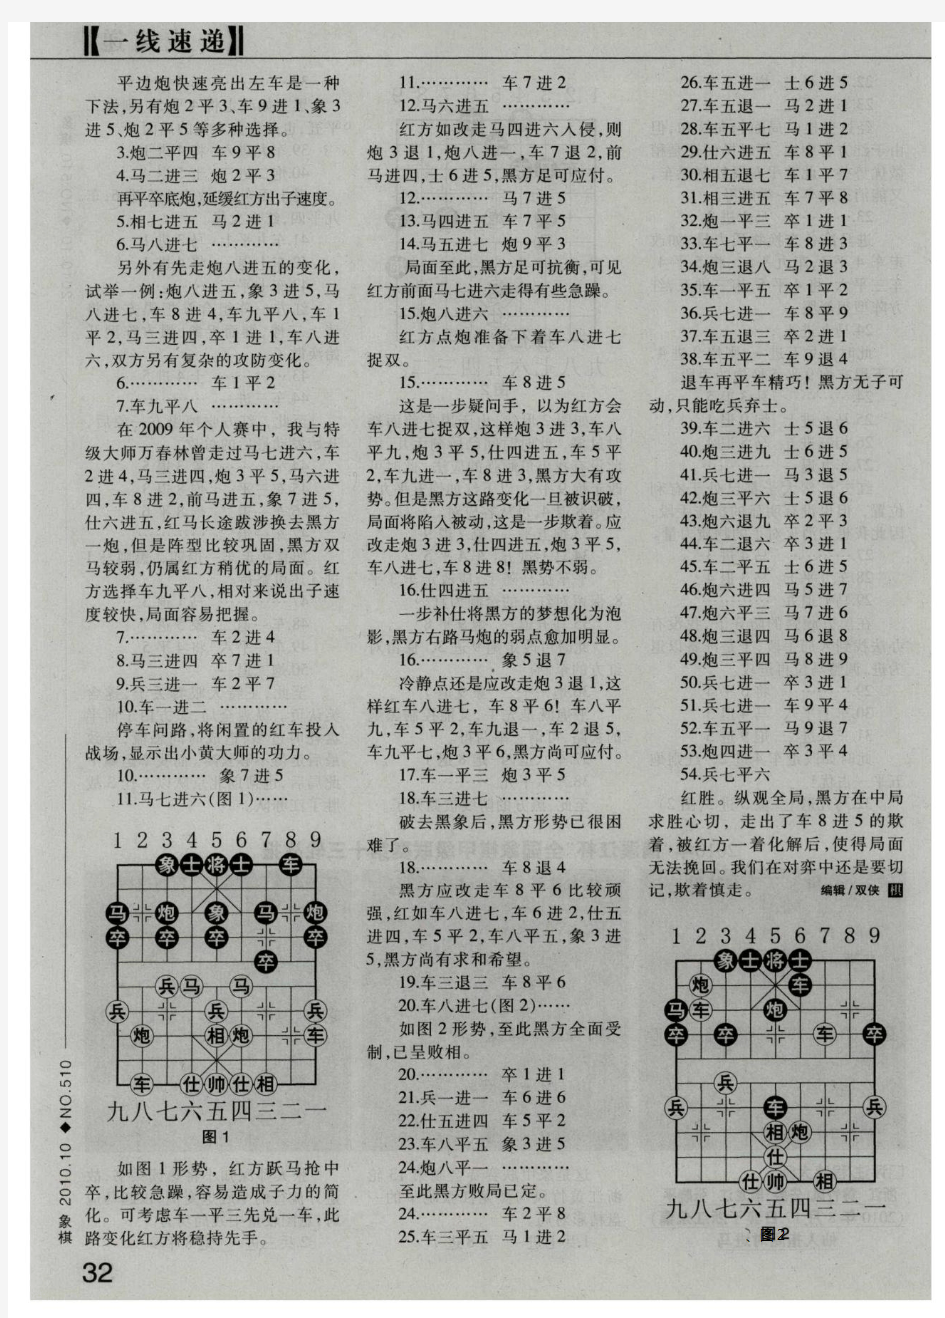 2010年“楠溪江杯”全国象棋甲级联赛第十三轮战报